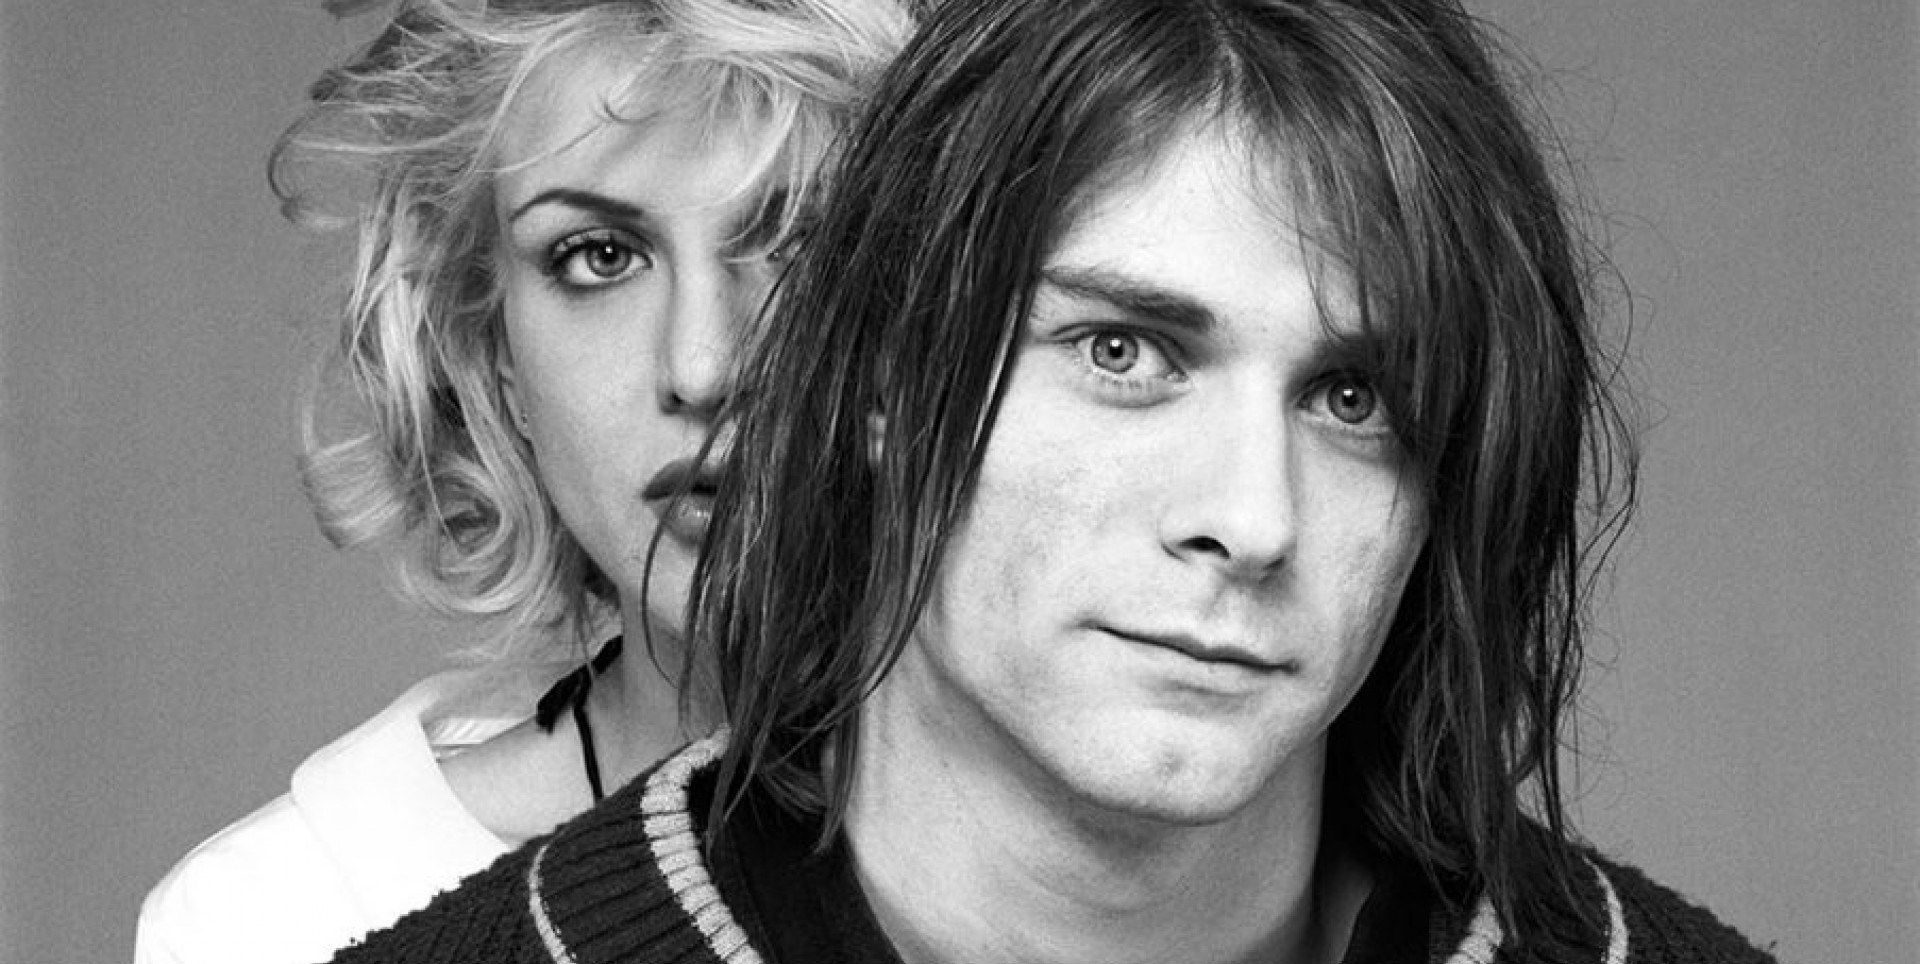 Courtney Love contó que una vez vio y habló con el fantasma de Kurt Cobain